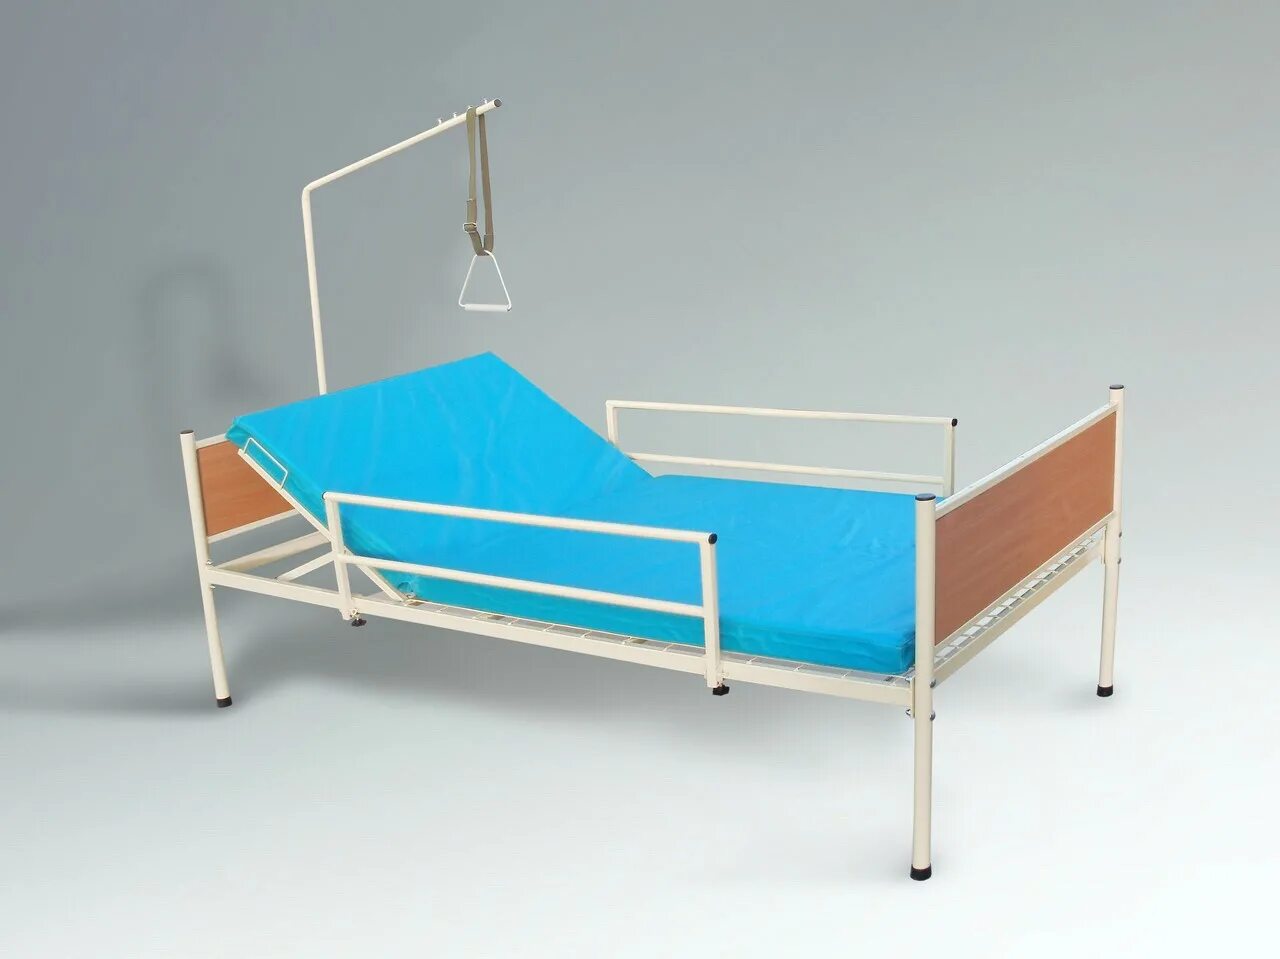 Кровать медицинская 2х функциональная Саиканг. Кровать медицинская двухсекционная крмп. Кровать для лежачих больных модель 092021. Функциональные кровати ELG 197 для лежачих больных. Авито купить медицинскую кровать для лежачих больных